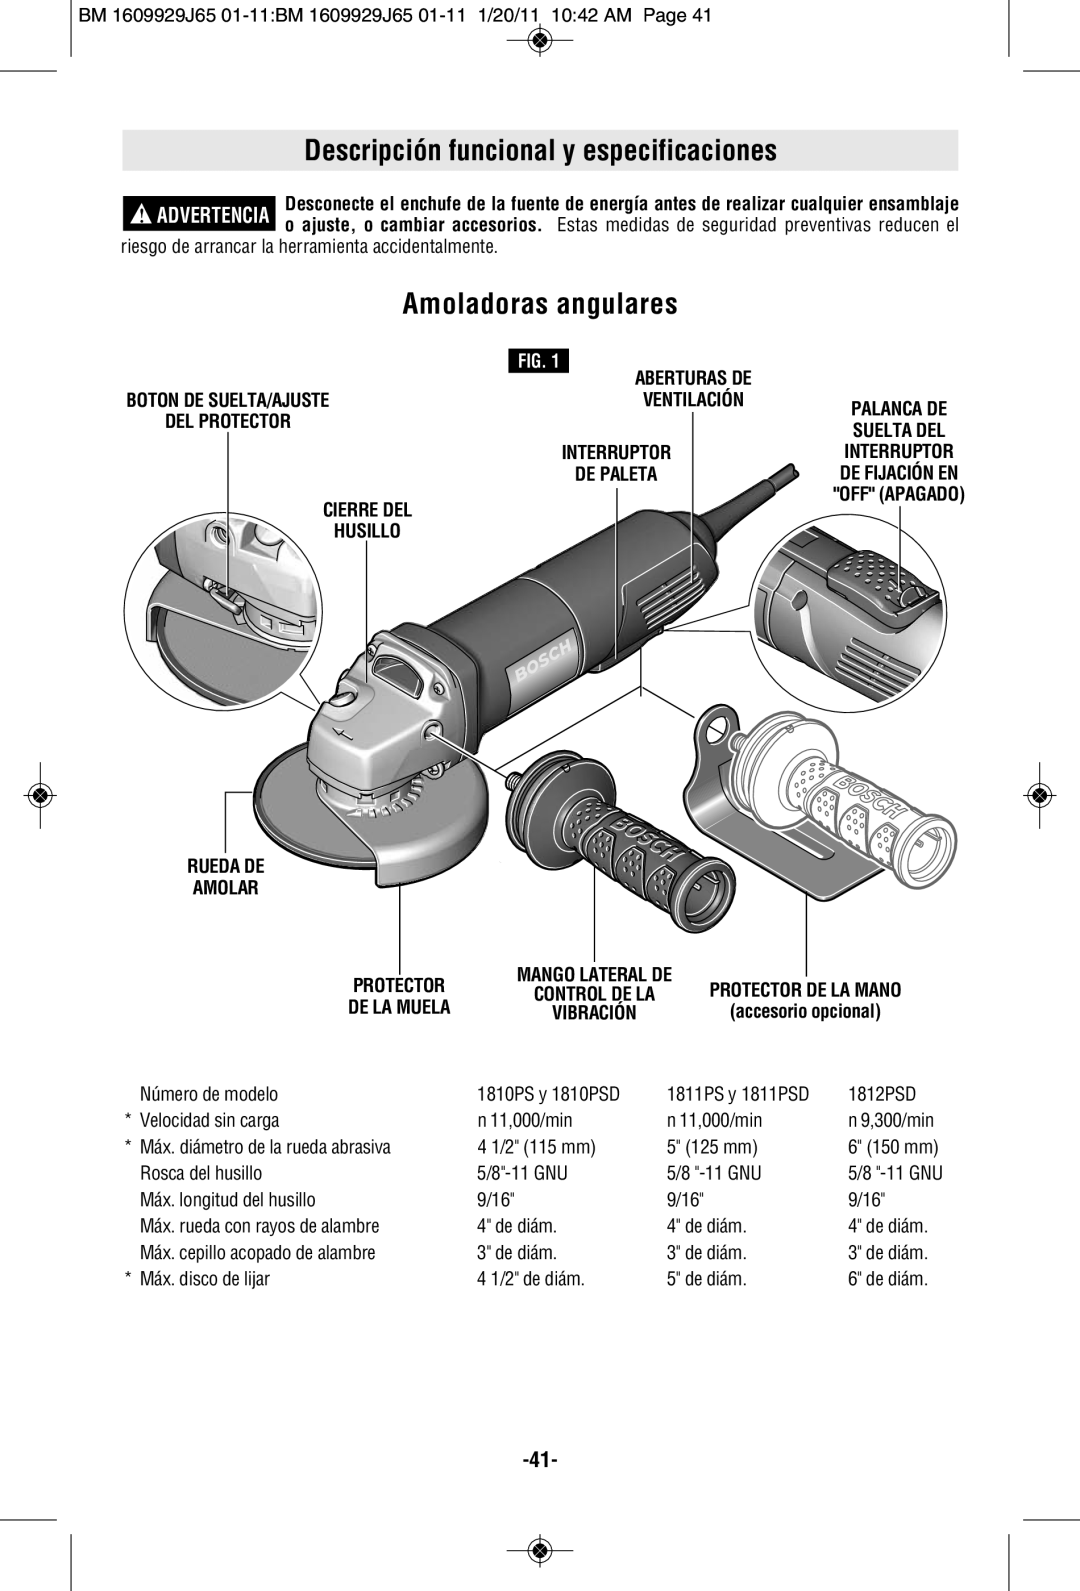 Bosch Power Tools 1812PSD, 1811PSD Descripción funcional y especificaciones, Amoladoras angulares, Rueda De, Amolar 